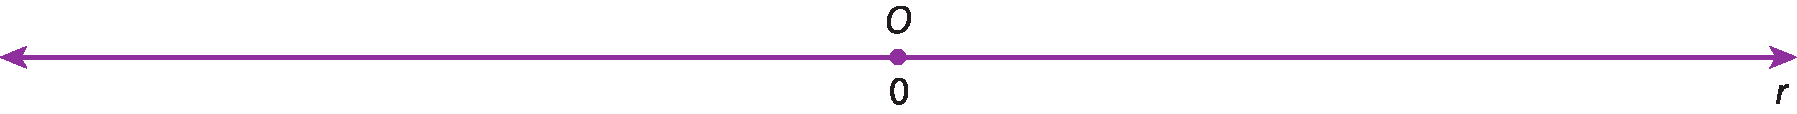 Ilustração. Reta numérica r com o ponto O associado ao número zero no centro.